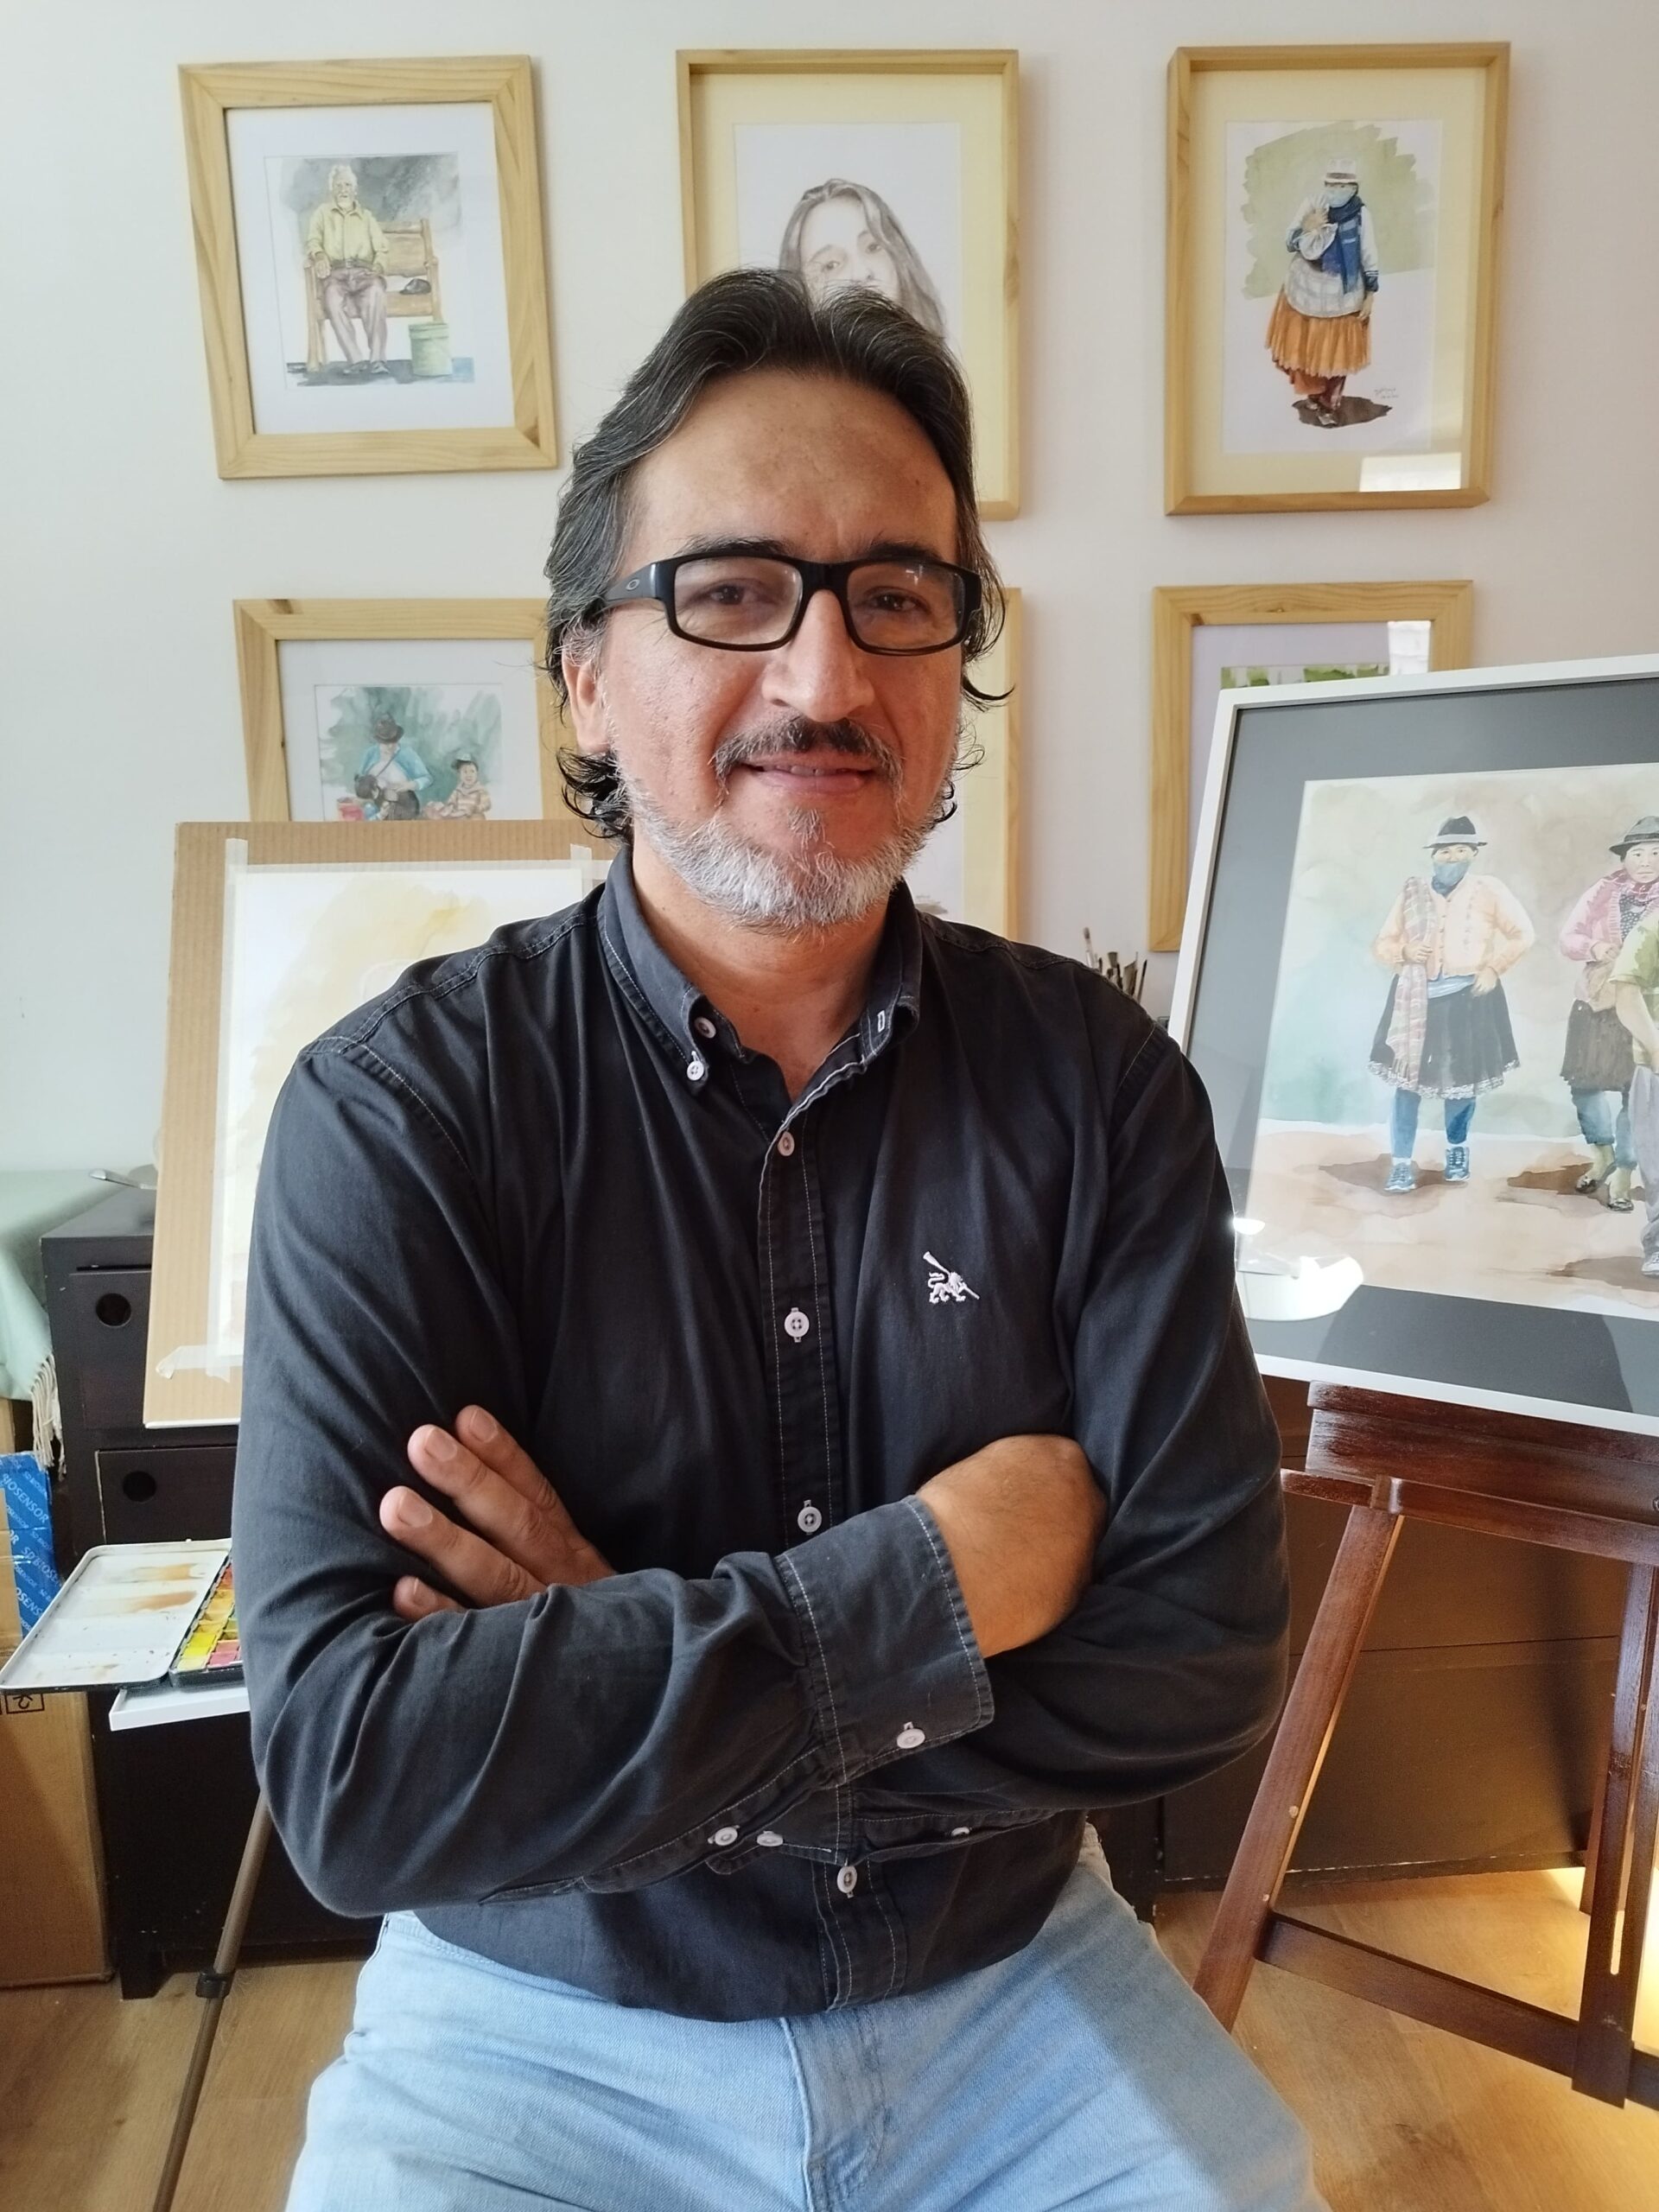 Marco Gahona, artista lojano, convierte la cotidianidad en arte